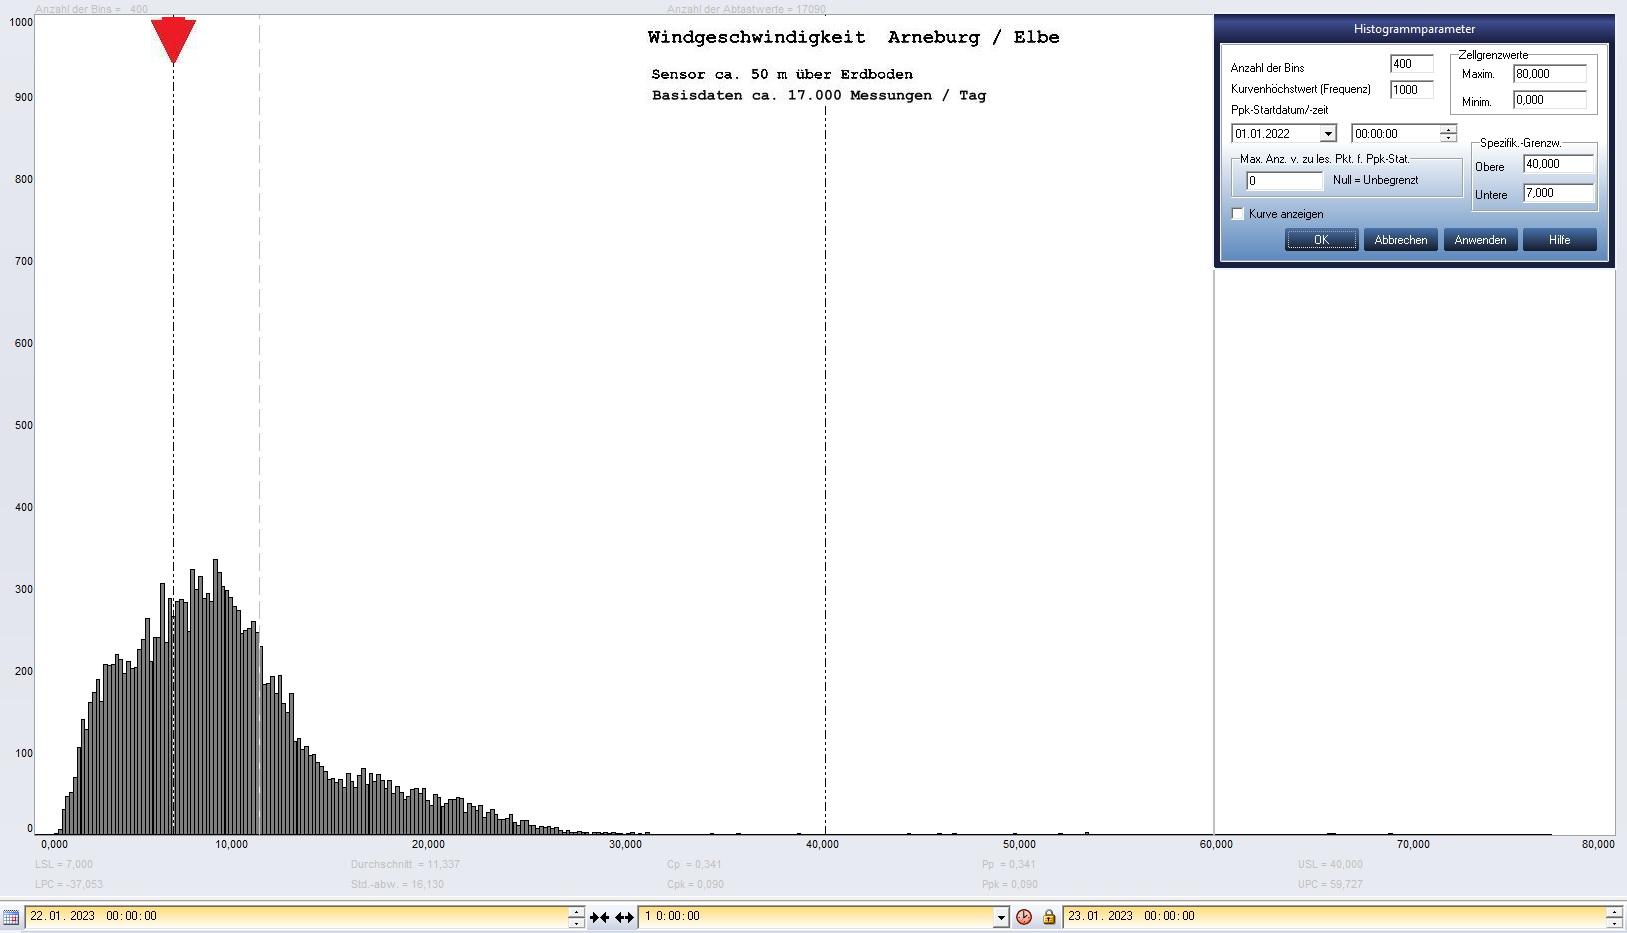 Arneburg Tages-Histogramm Winddaten, 22.01.2023
  Histogramm, Sensor auf Gebude, ca. 50 m ber Erdboden, Basis: 5s-Aufzeichnung